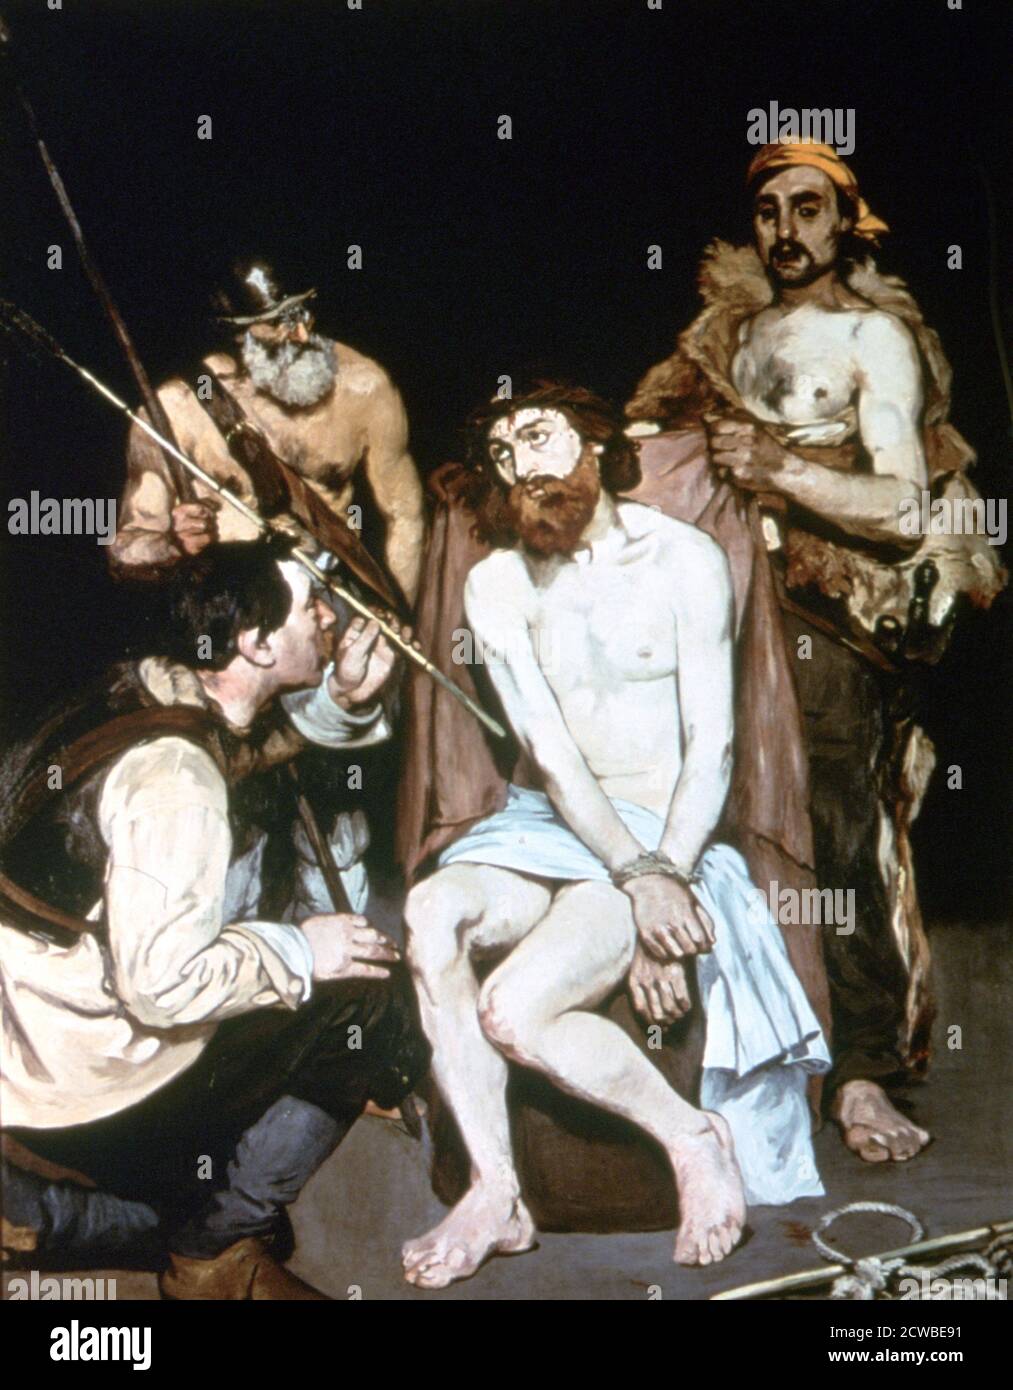 Il Mocking di Cristo', 1885. Artista: Edouard Manet. Edouard Manet (1832-1883) è stato un pittore modernista francese. Fu uno dei primi artisti del XIX secolo a dipingere la vita moderna. Foto Stock